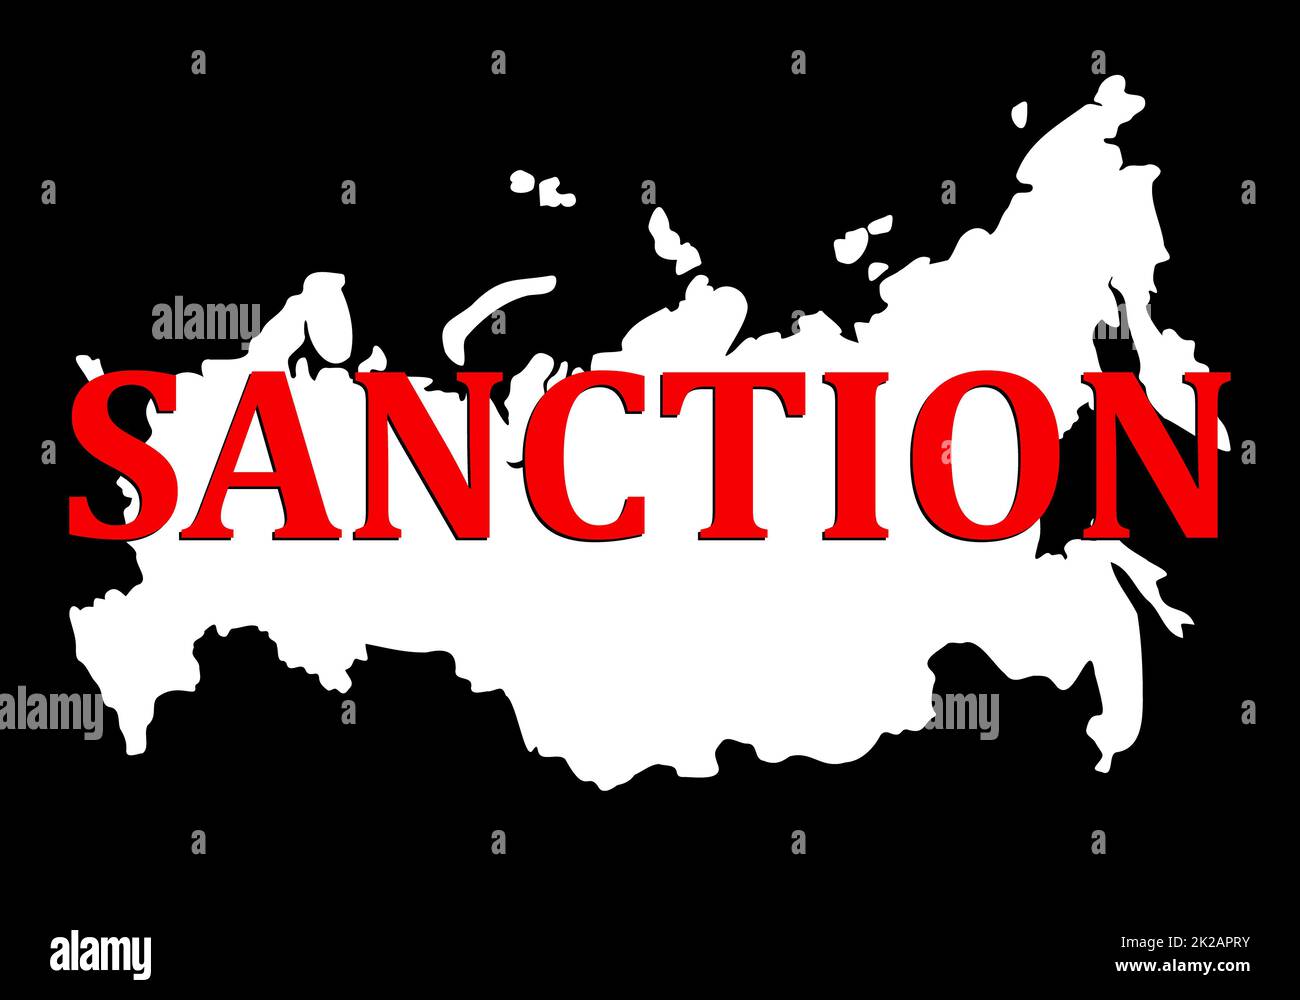 Sanctions contre la Russie. Silhouette de carte de la fédération de Russie avec texte rouge de sanction. L'effondrement et la destruction de l'État en raison du règne de Poutine et des attaques contre un pays voisin - l'Ukraine. Banque D'Images